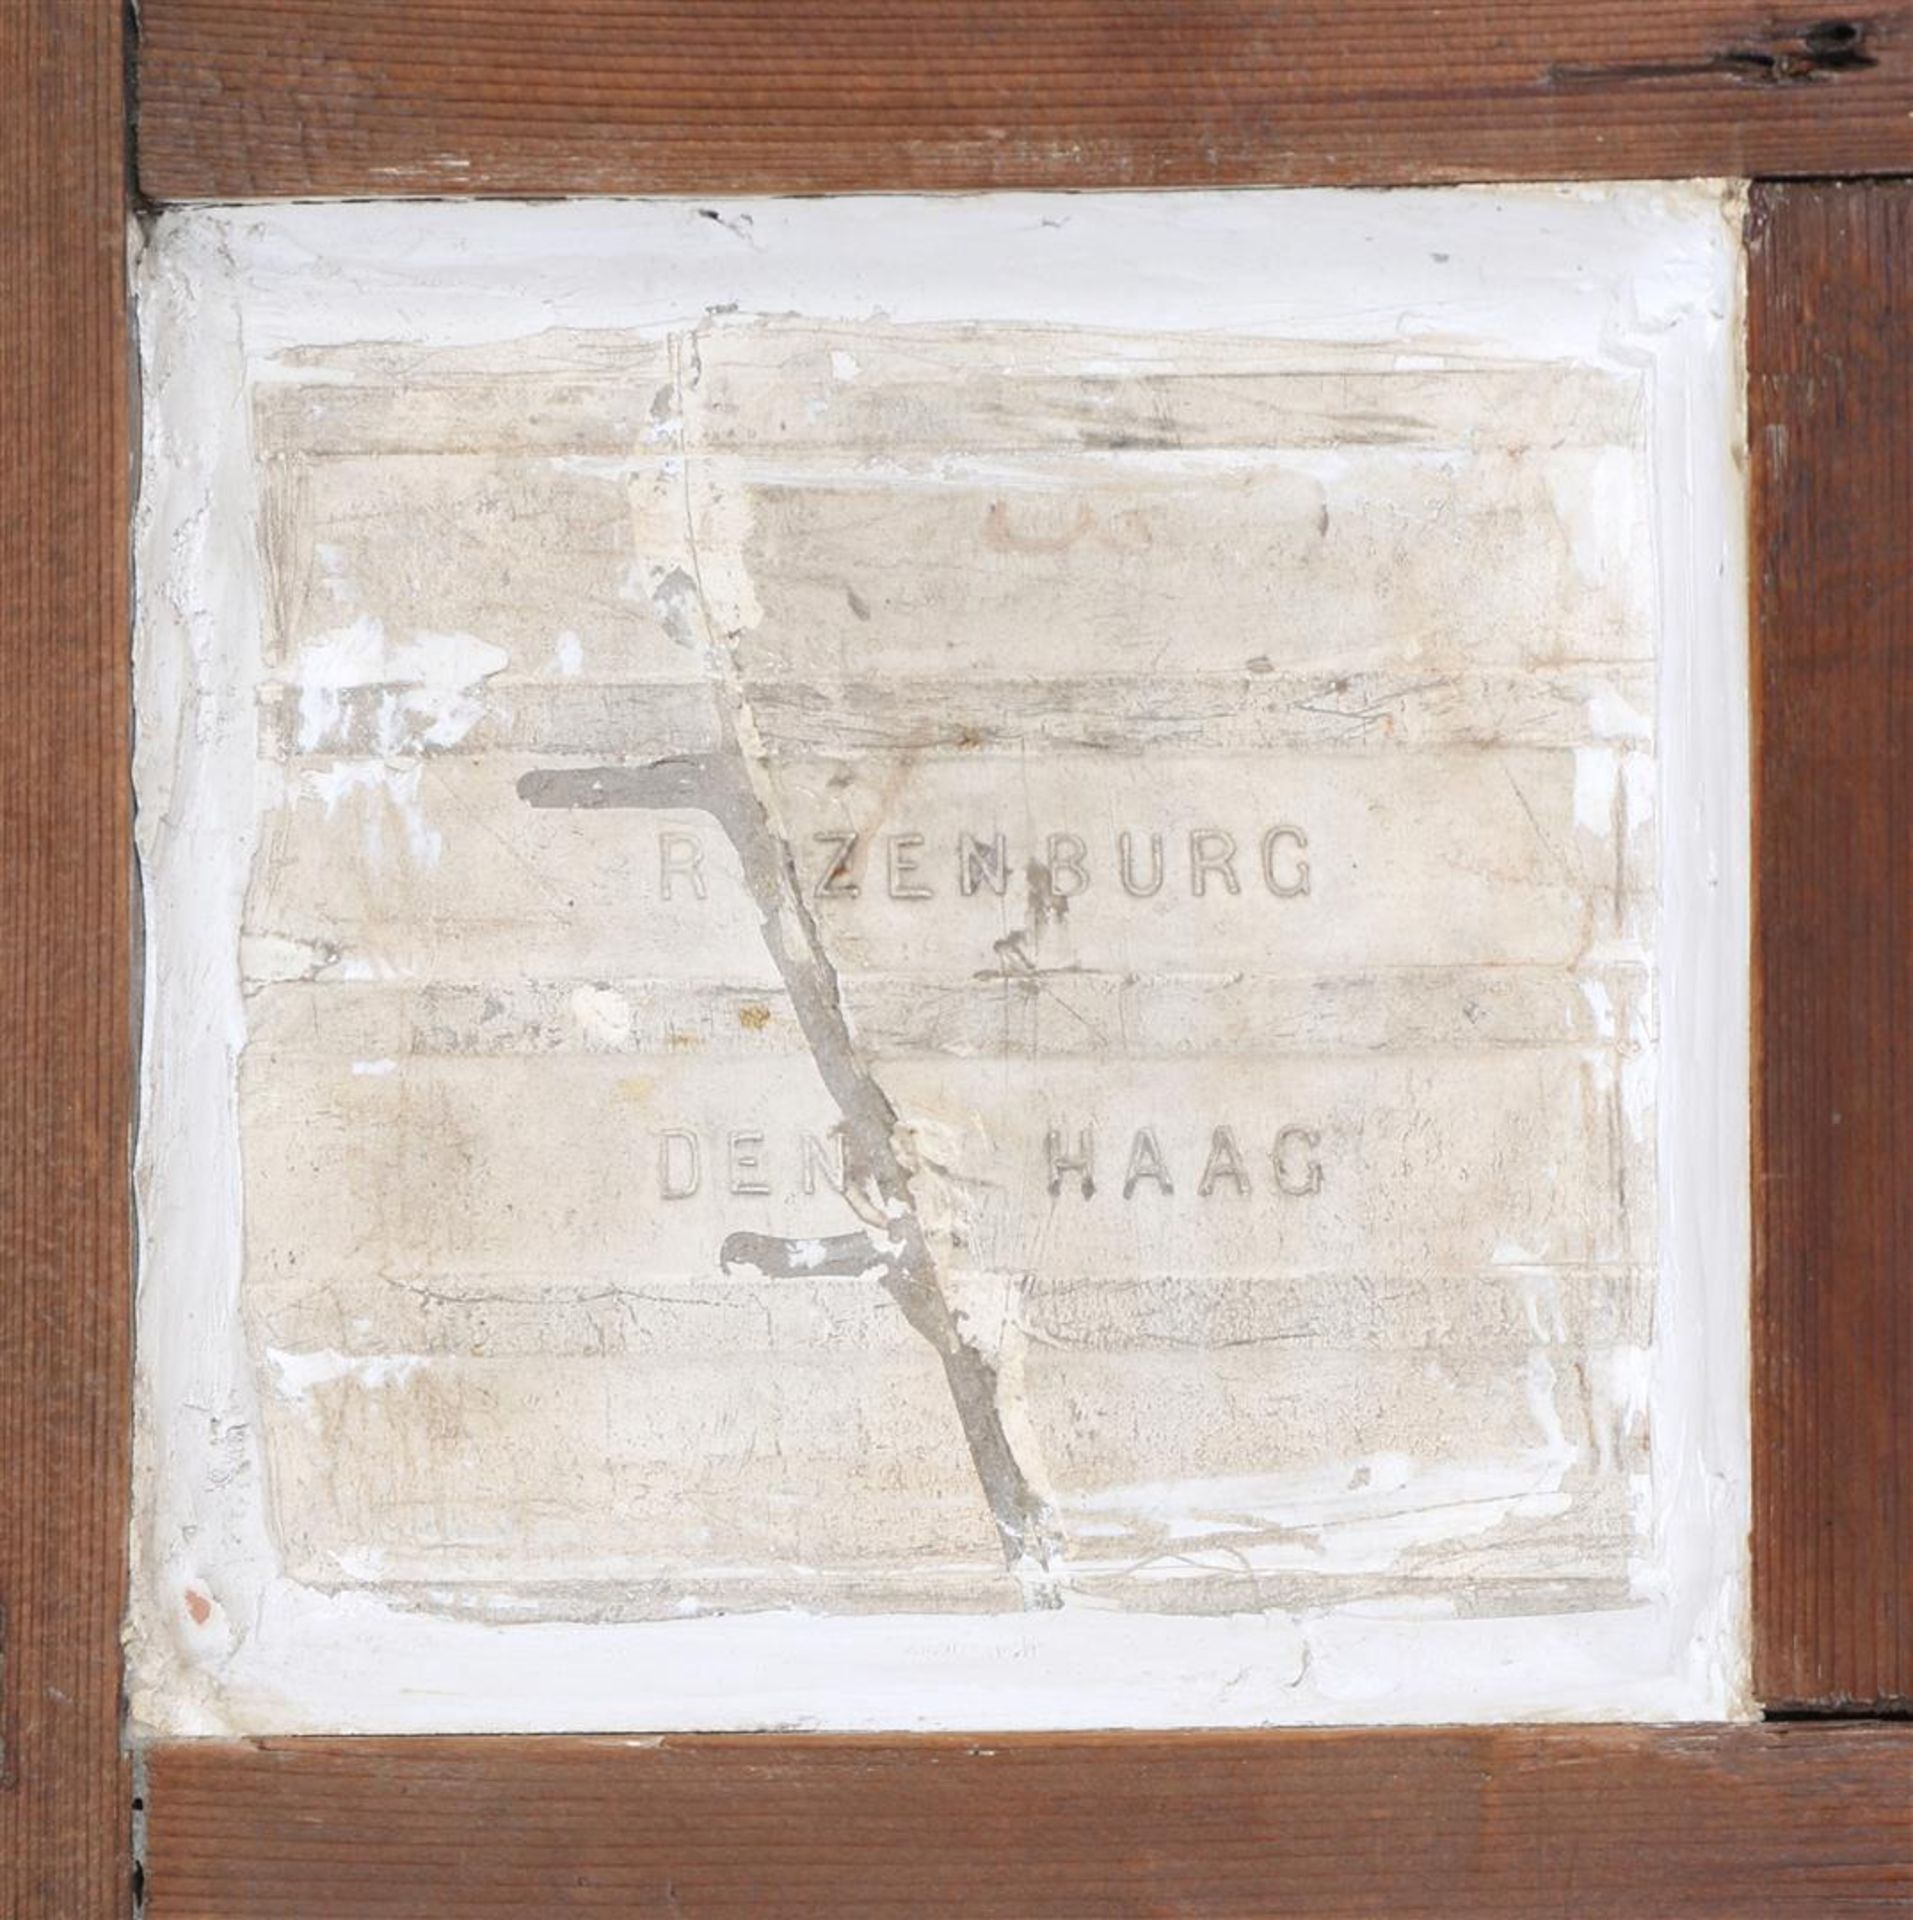 Earthenware Rozenburg tile - Image 6 of 6